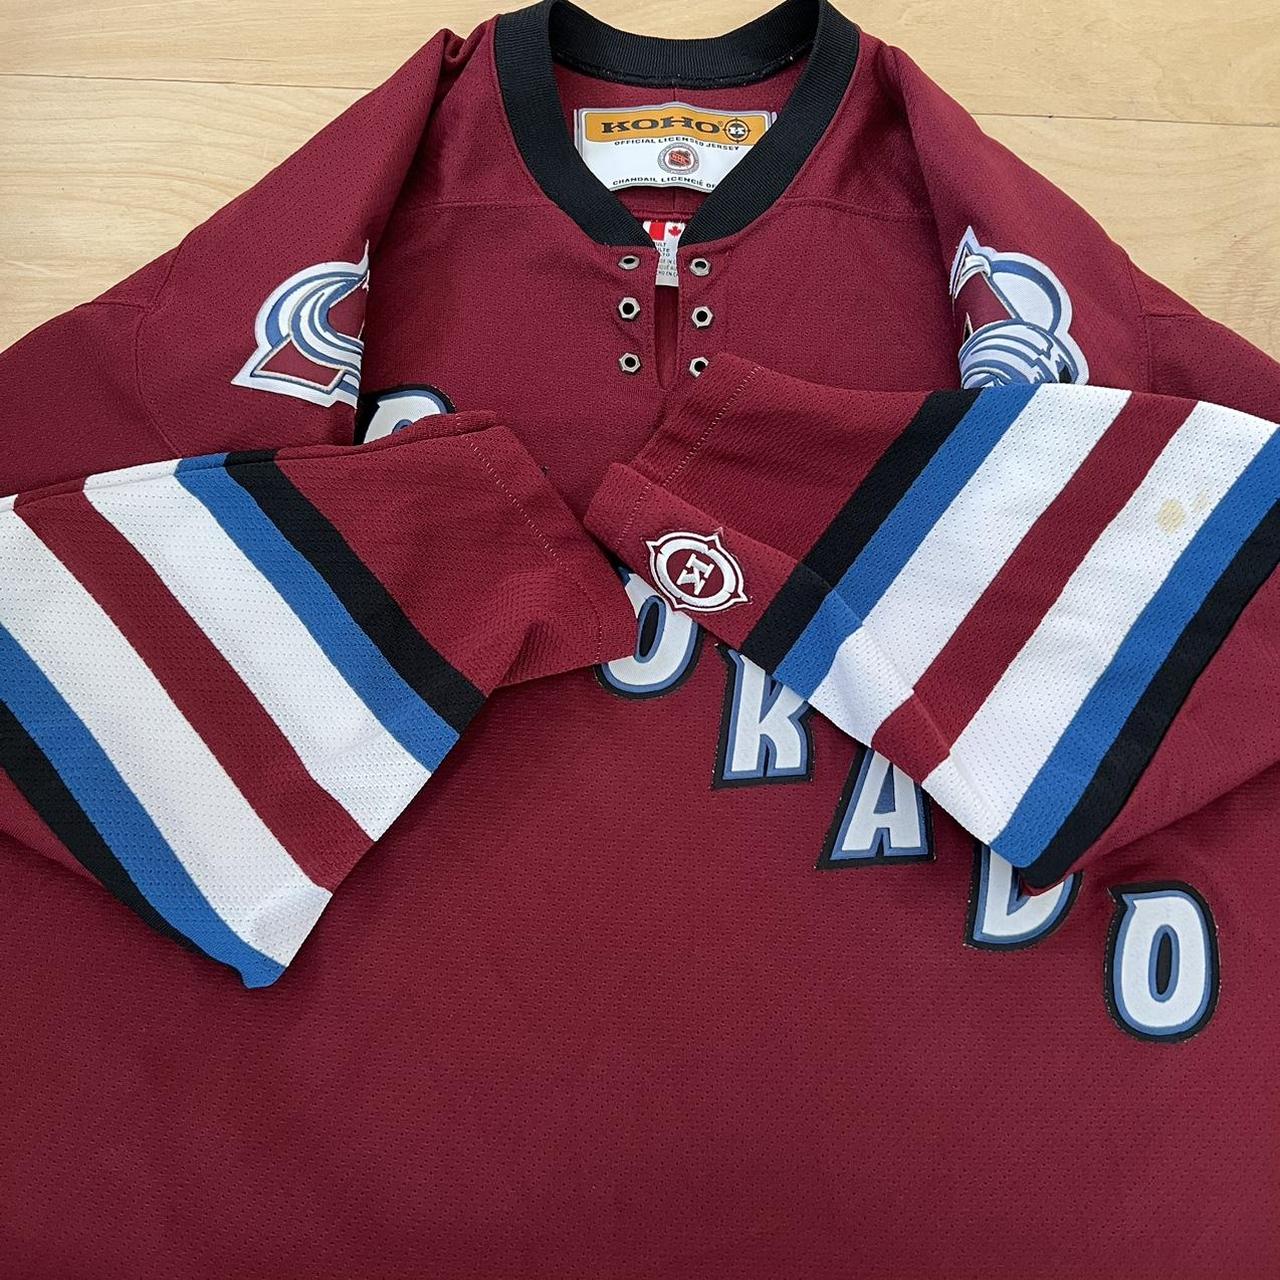 Vintage Colorado Avalanche Jersey type - Depop